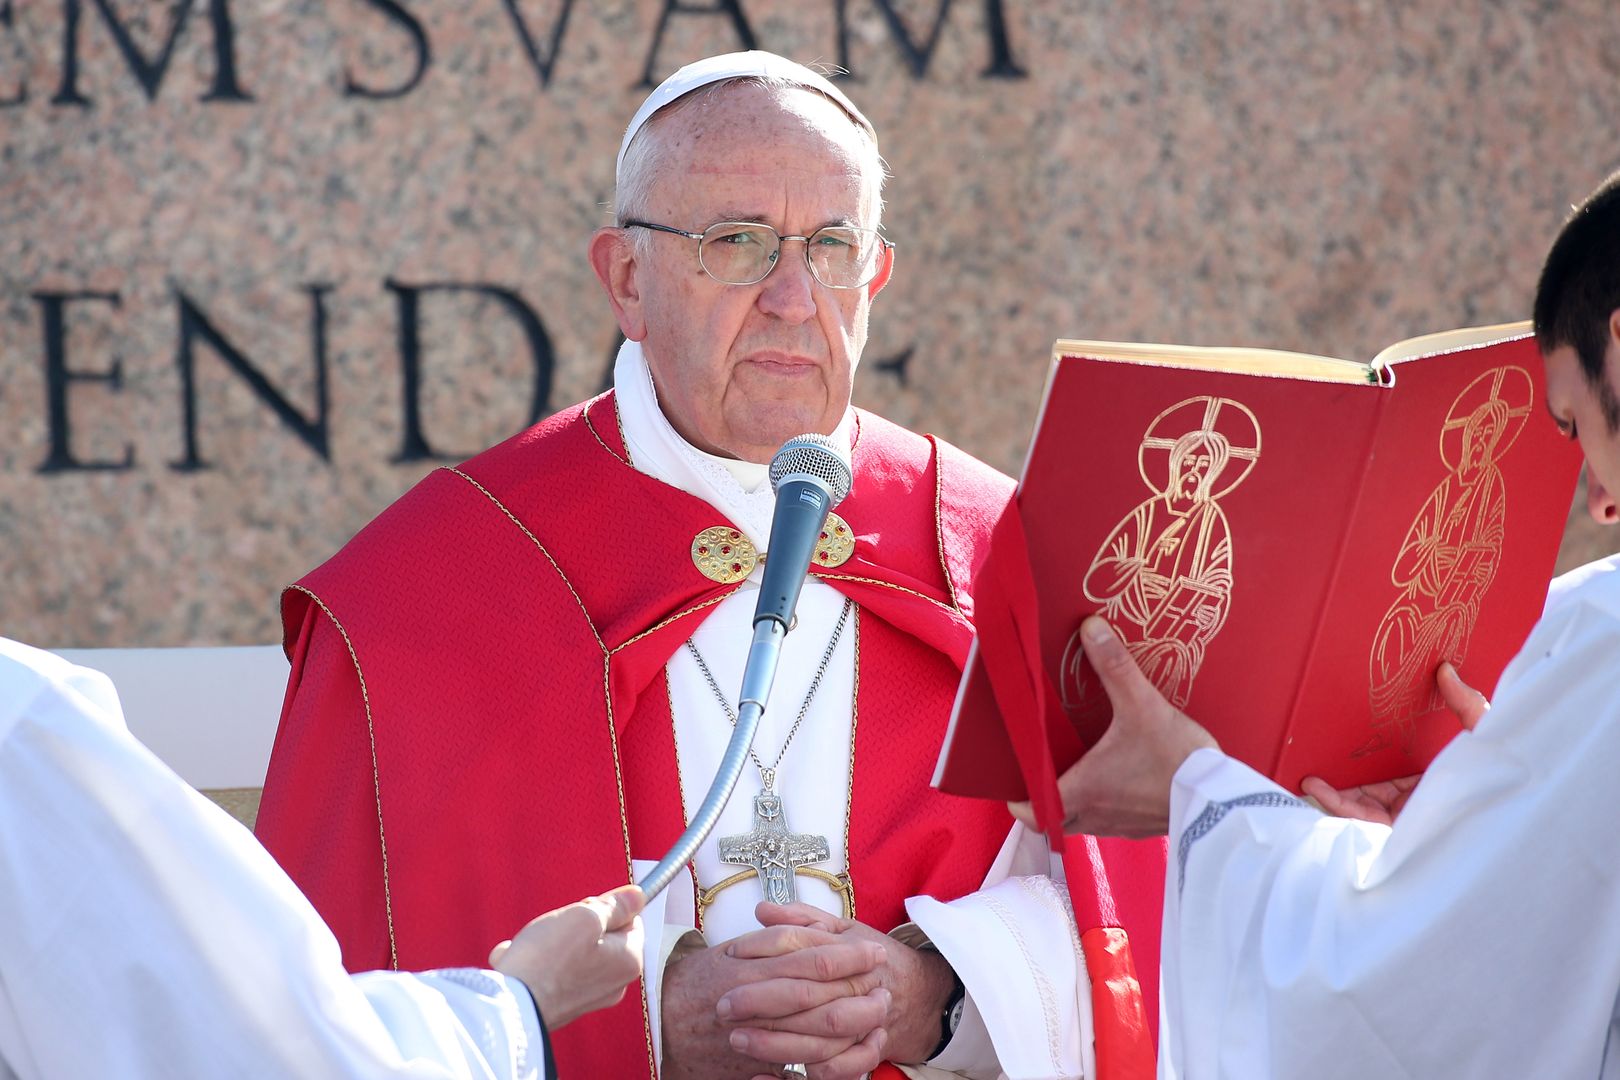 Papież poprosił o zwrot datku. W kwocie była liczba 666